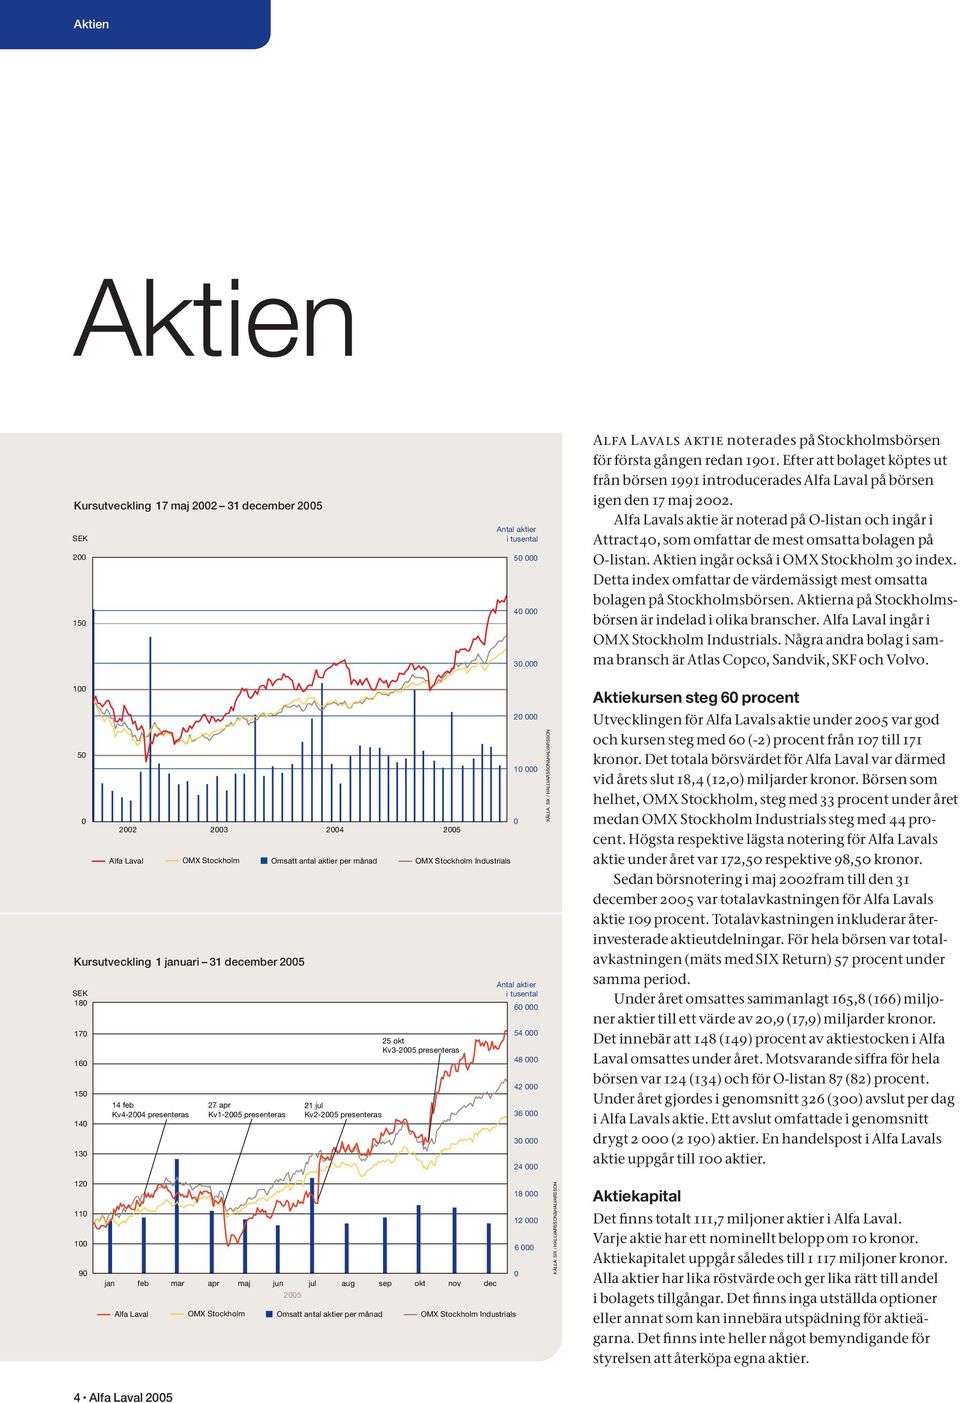 Alfa Lavals aktie är noterad på O-listan och ingår i Attract40, som omfattar de mest omsatta bolagen på O-listan. Aktien ingår också i OMX Stockholm 30 index.